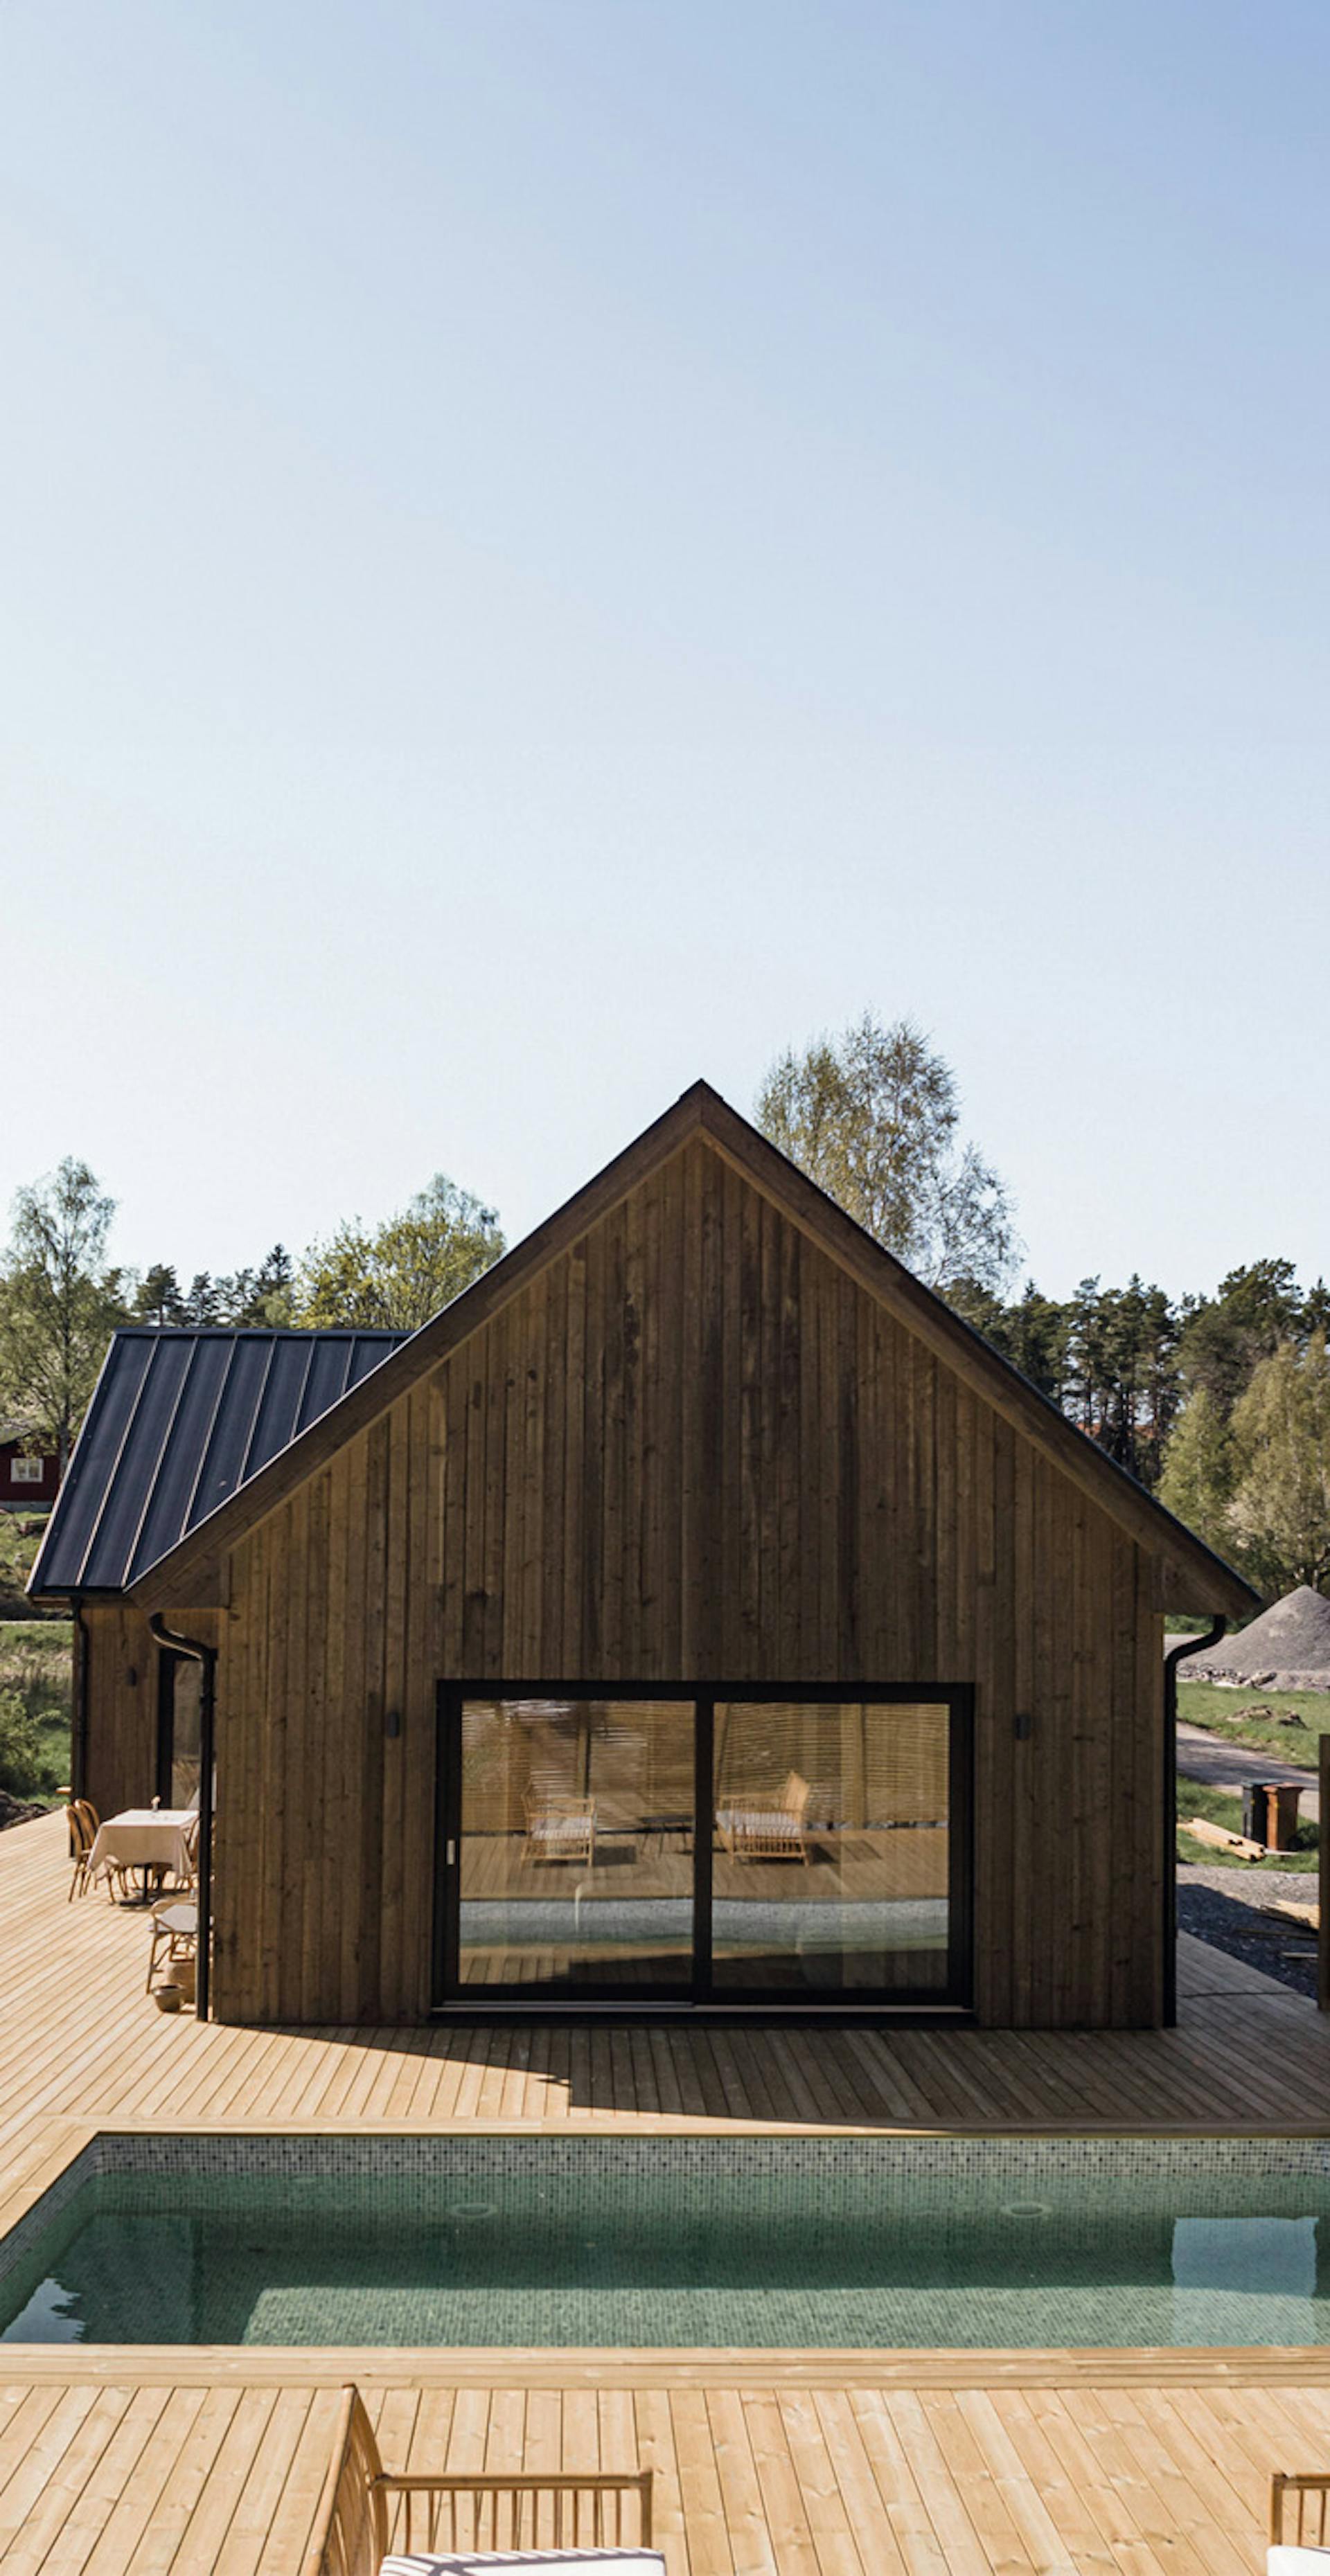 Modern Värmdö home by Krivaja, built with advanced prefabrication methods